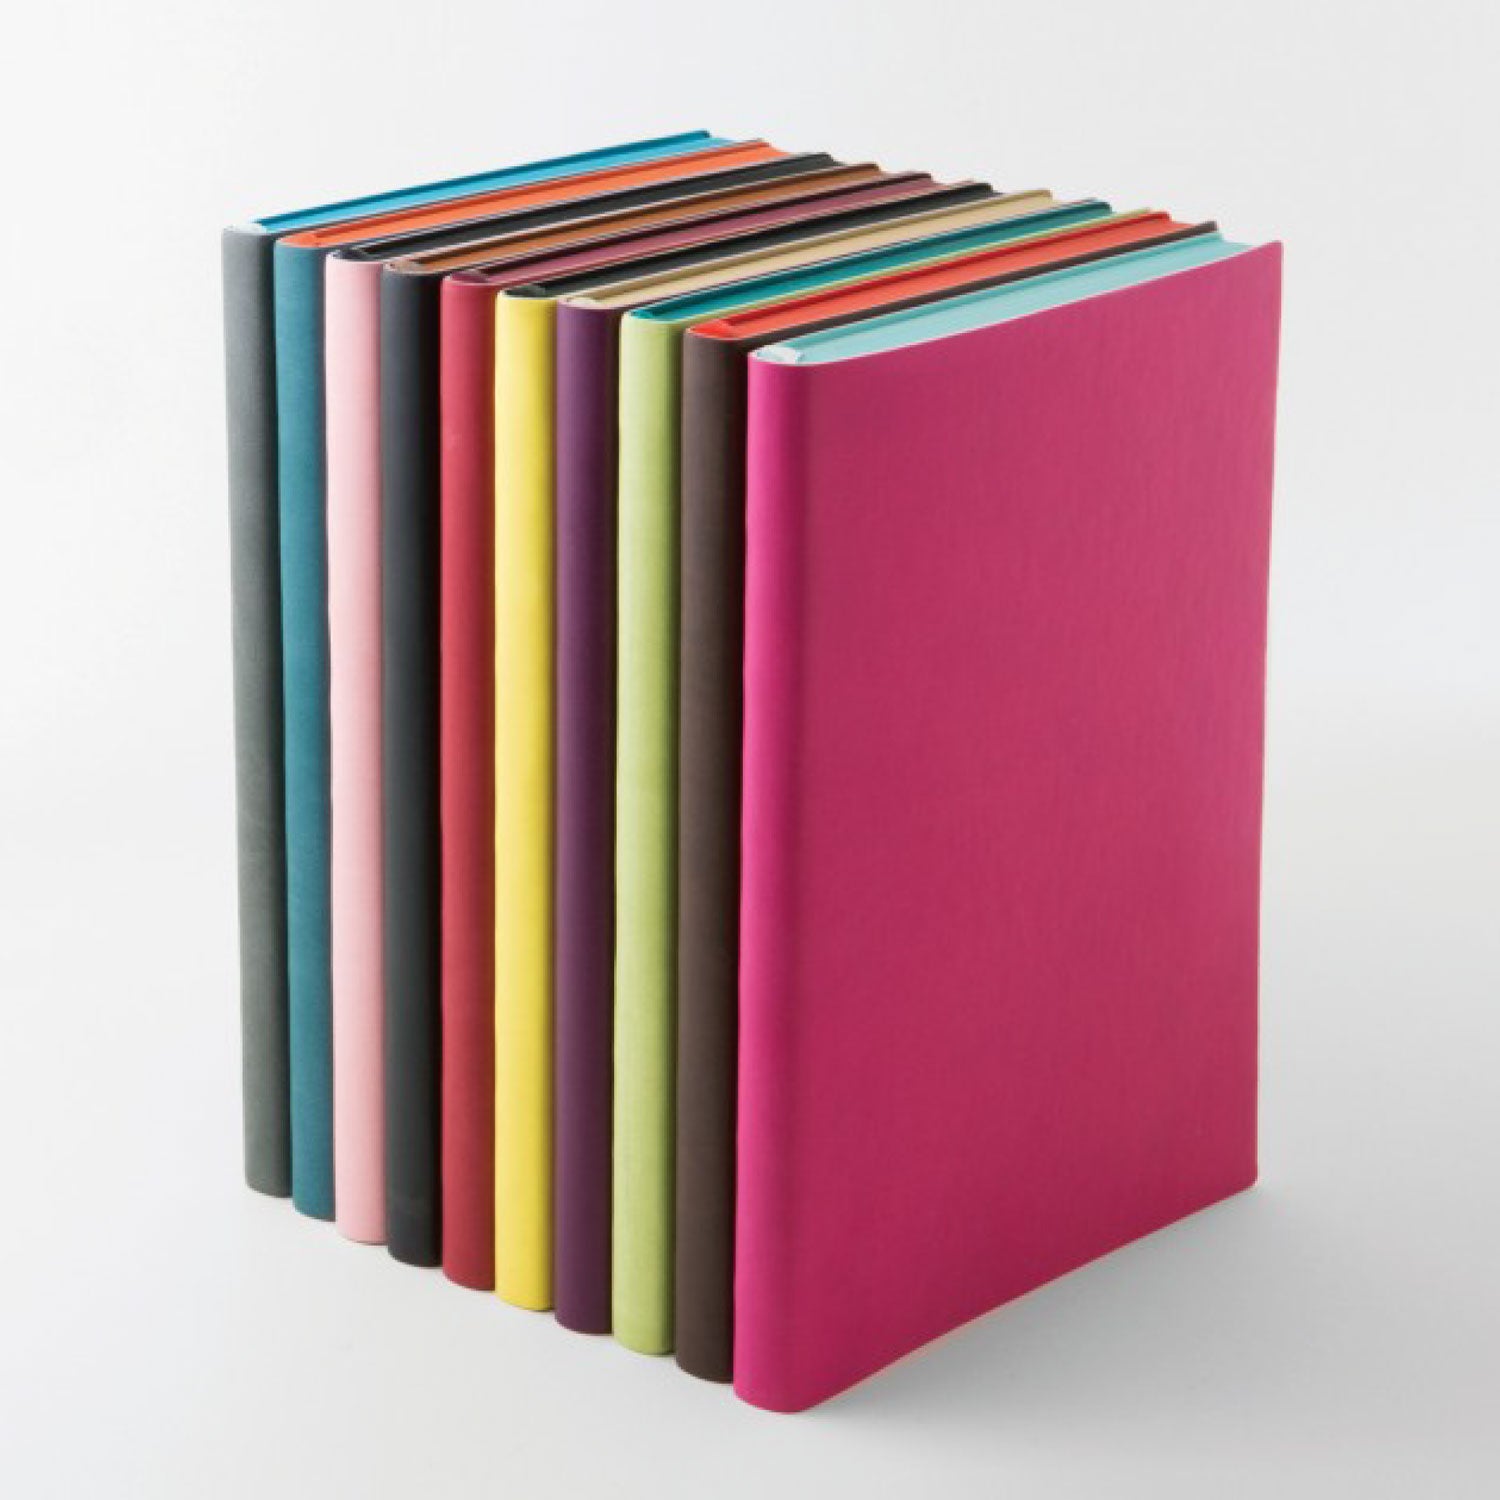 Daycraft - Notebook - Softcover - A5 - Pink